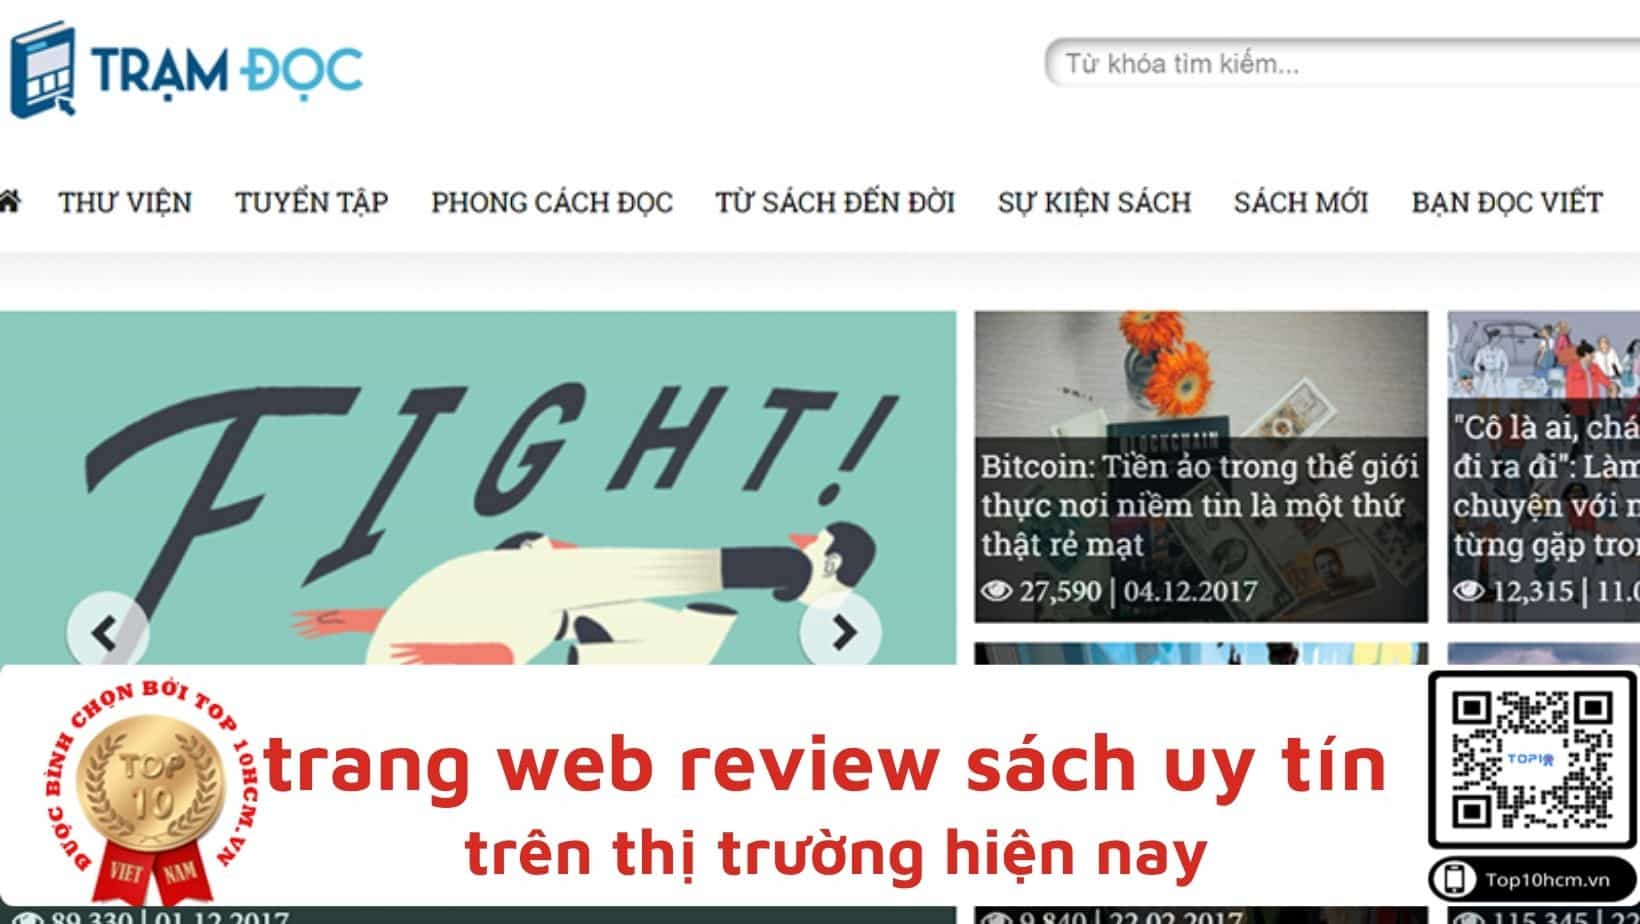 tramdoc min Top 9 trang web review sách uy tín nhất tại Việt Nam trong năm 2021 - sachvui.vn